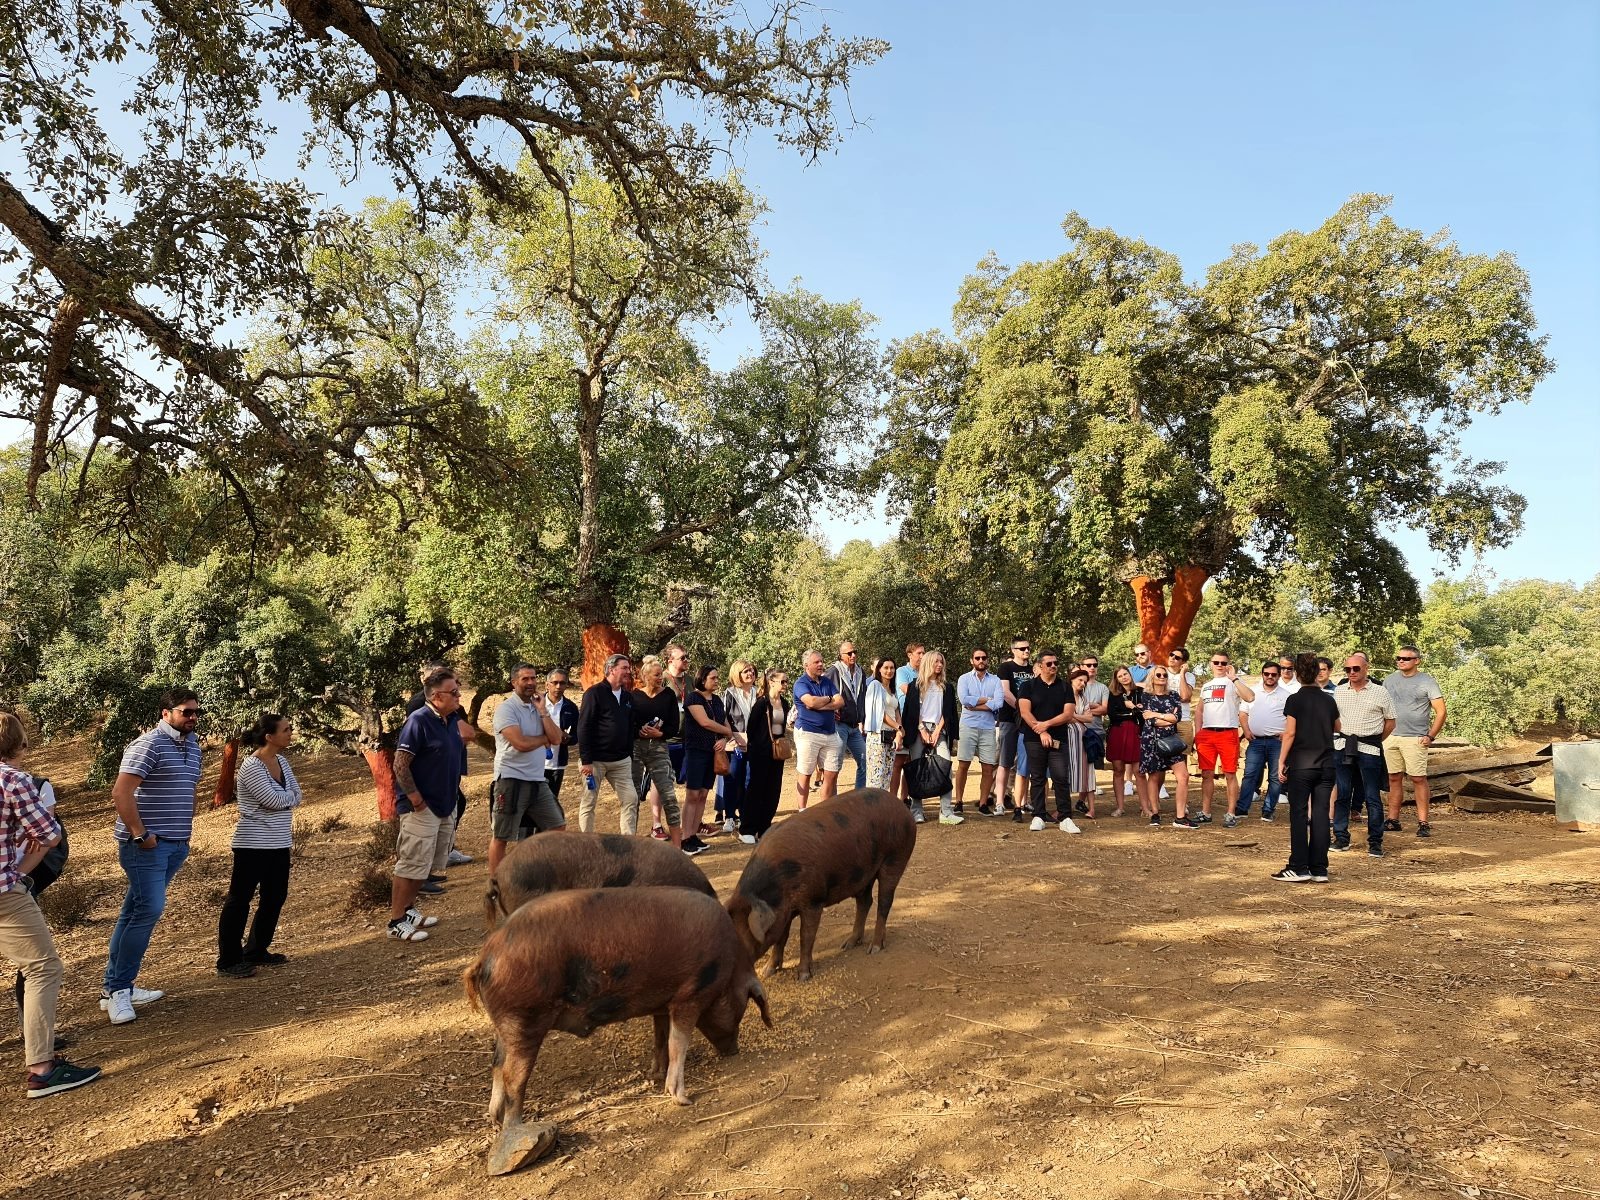  Grupo de turistas en la dehesa con los cerdos.